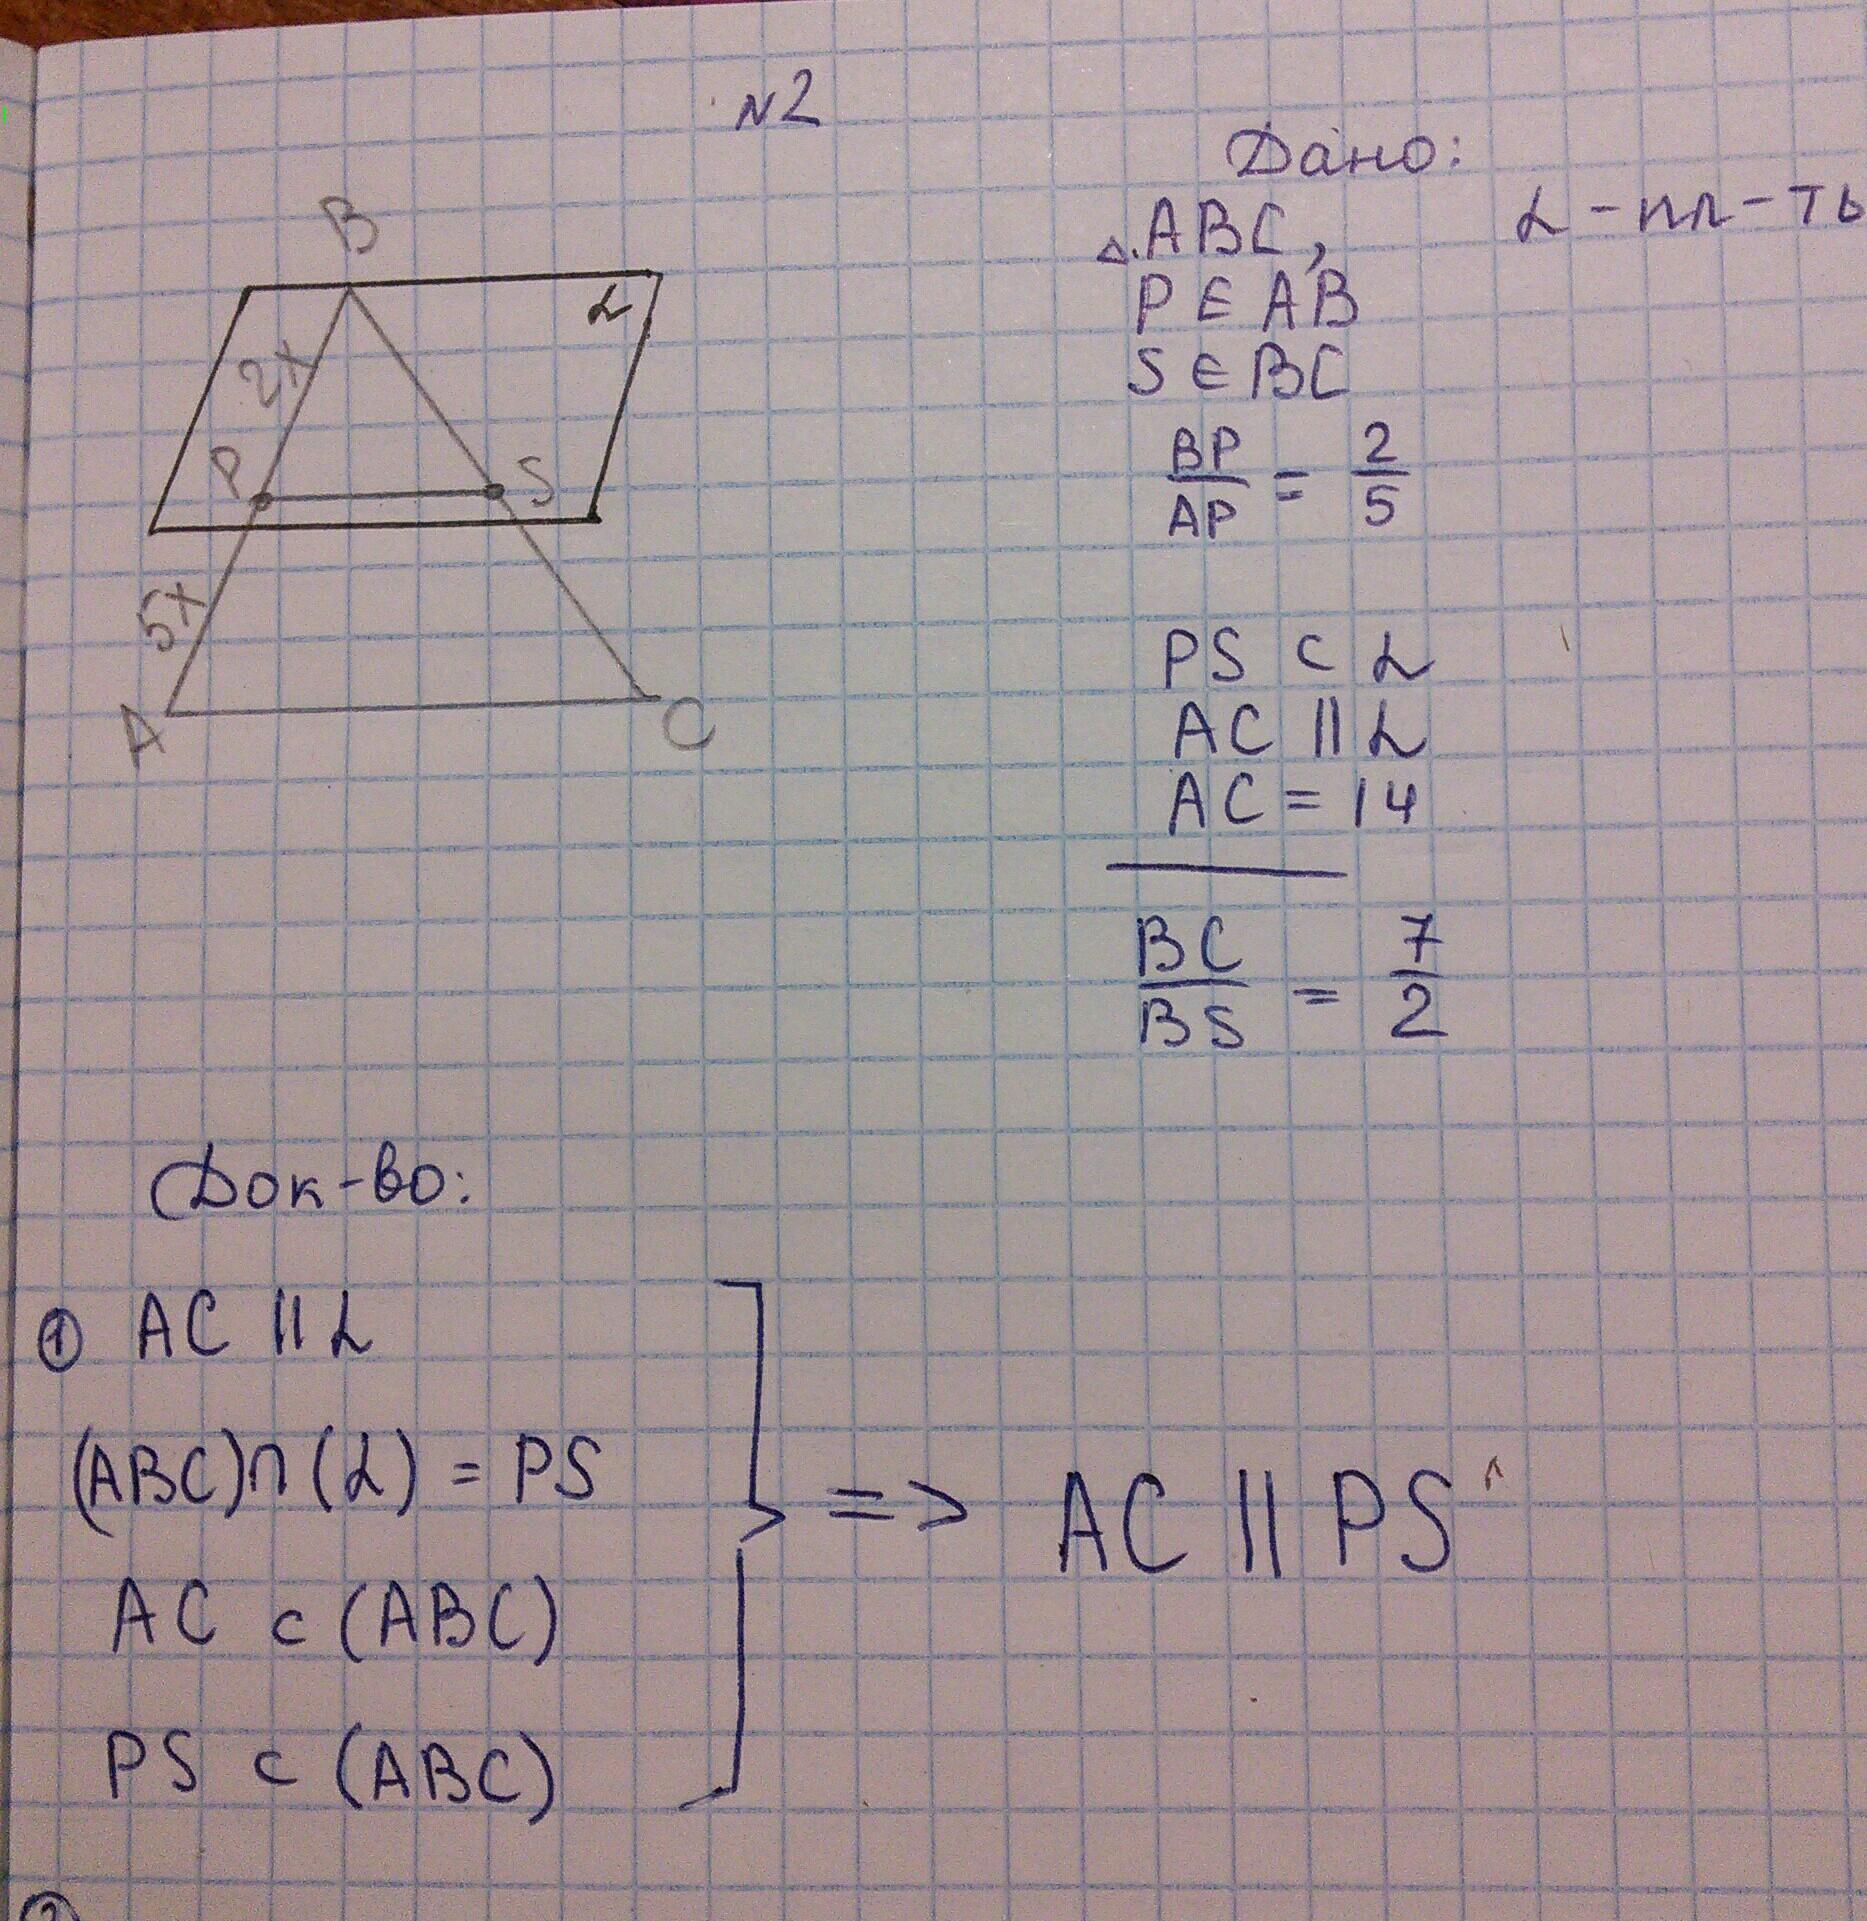 Даны треугольник ABC И плоскость Альфа ab параллельна Альфа. Даны треугольник АБС И плоскость Альфа аб параллельно Альфа АС. Даны треугольник АВС И плоскость Альфа АВ параллельна Альфа АС. Дано БС параллельно Альфа АС 16.